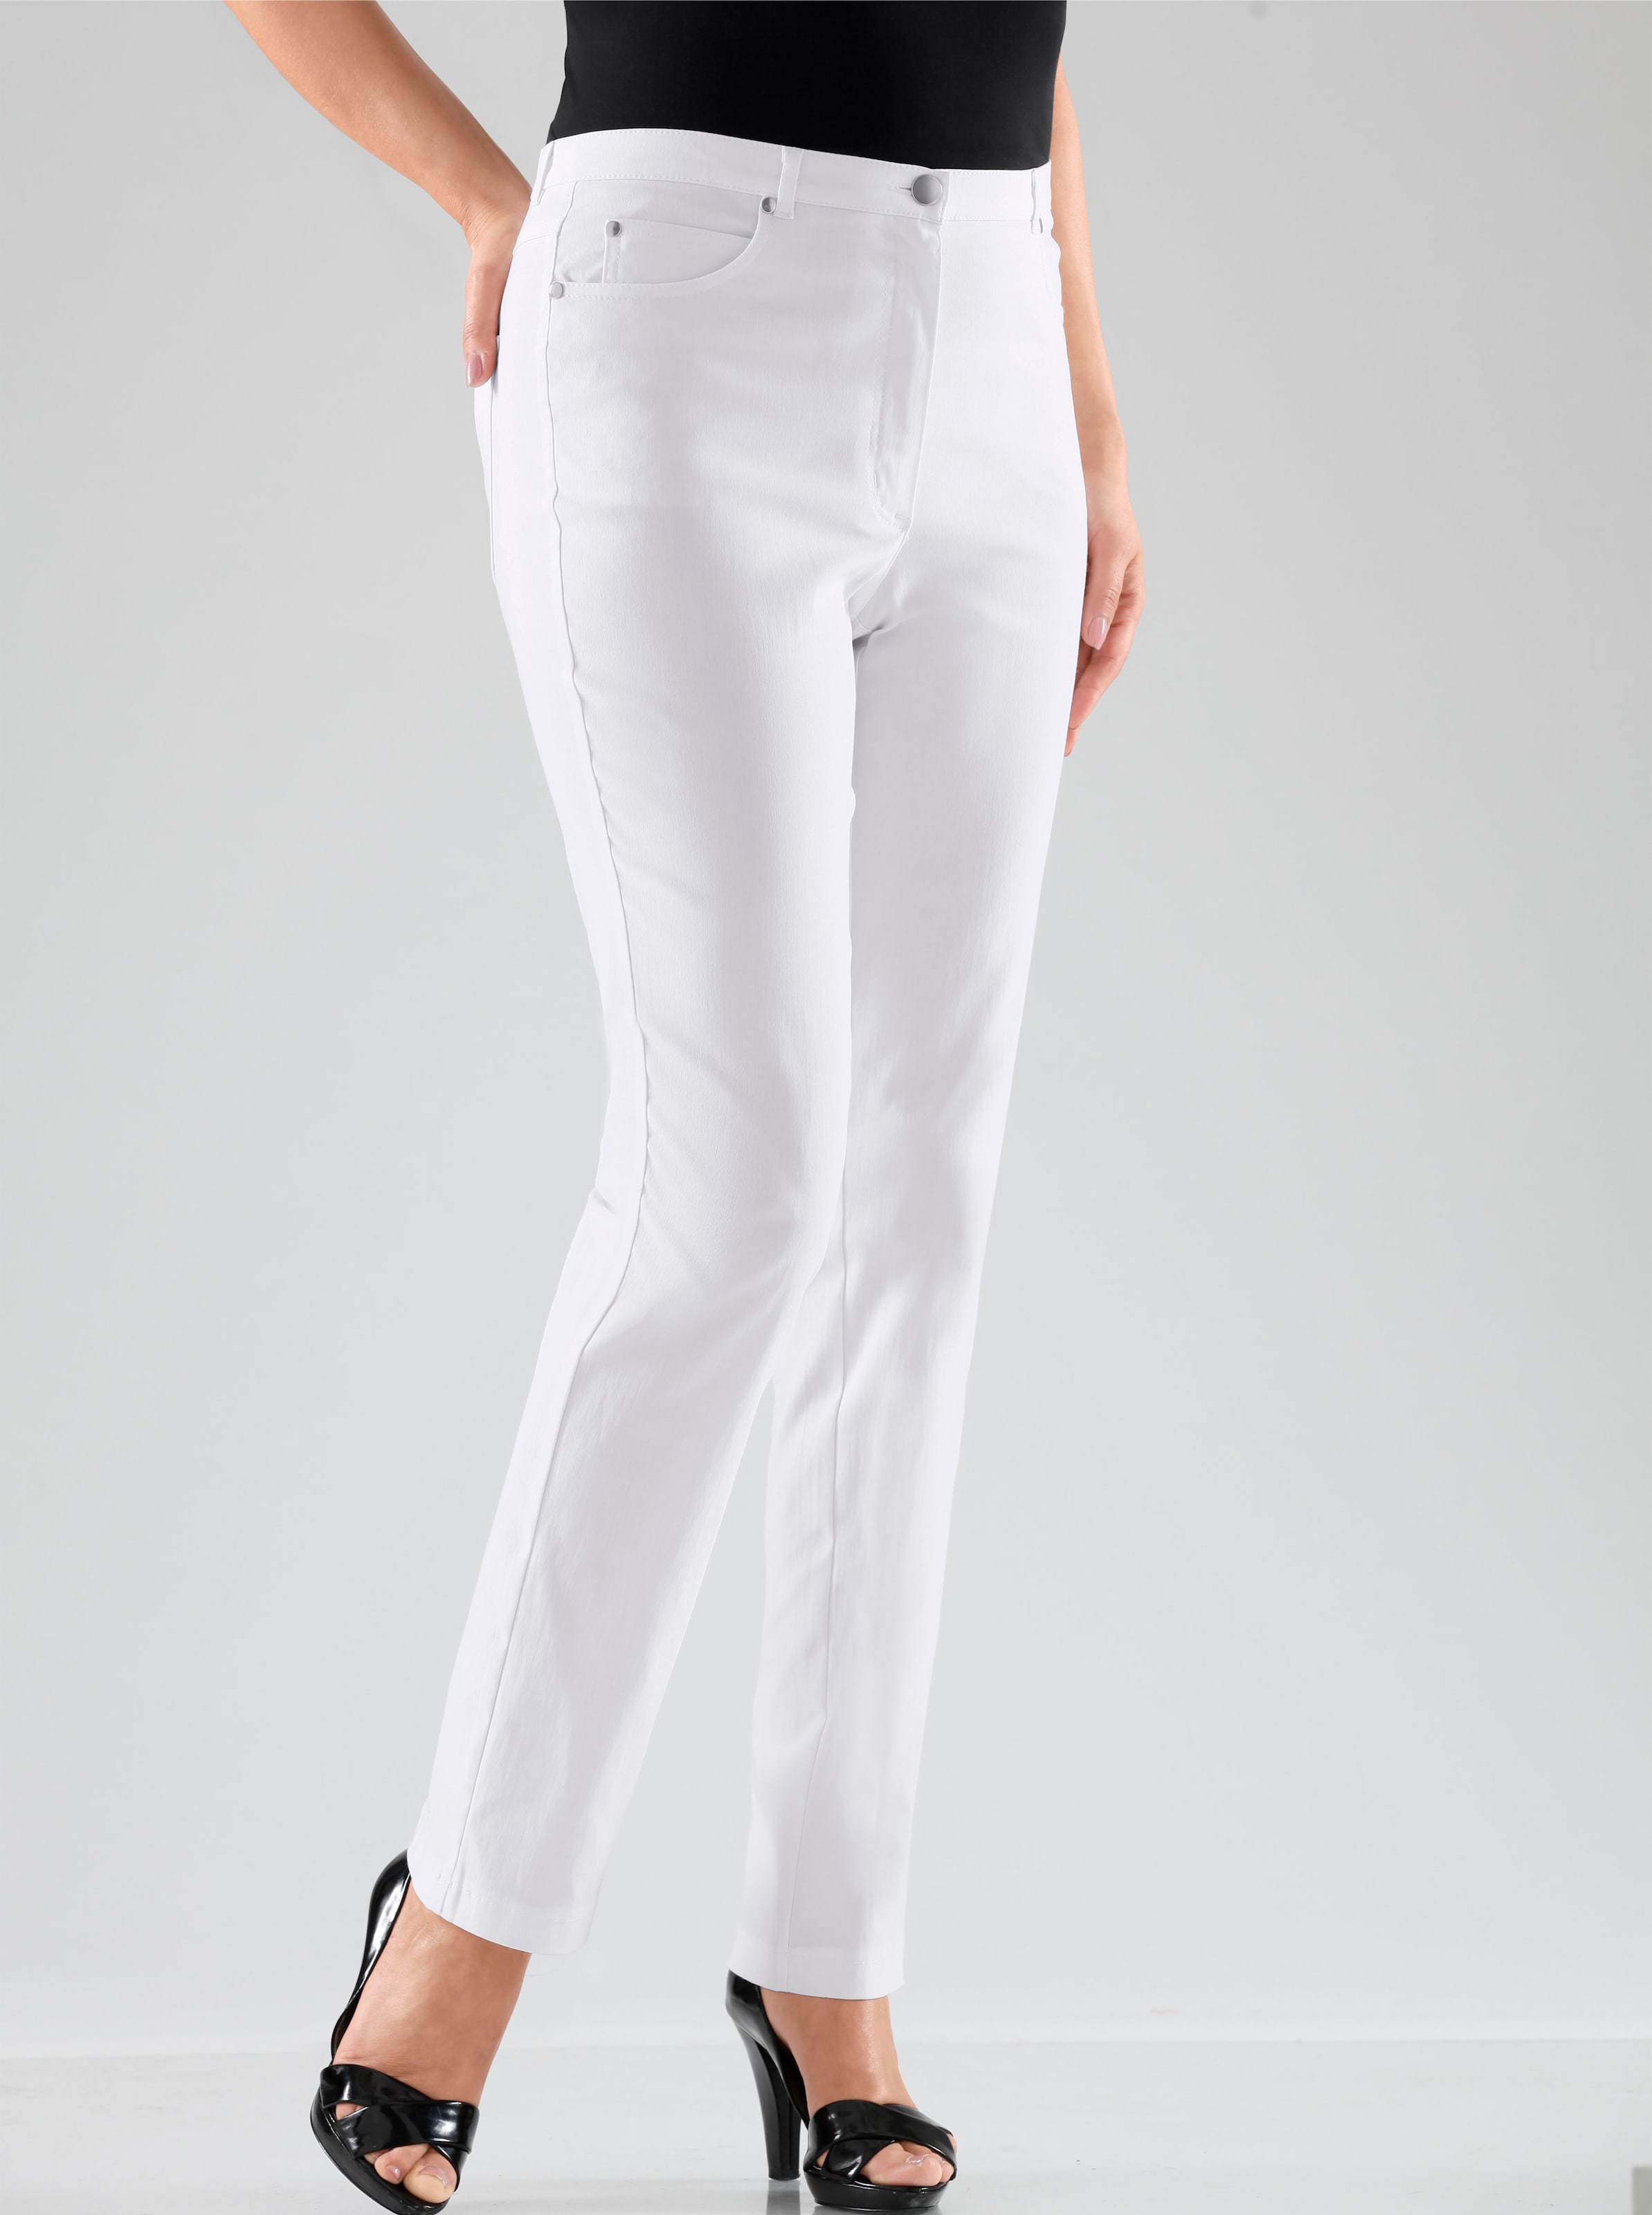 Witt Damen 5-Pocket-Hose in elastischer Qualität, weiß